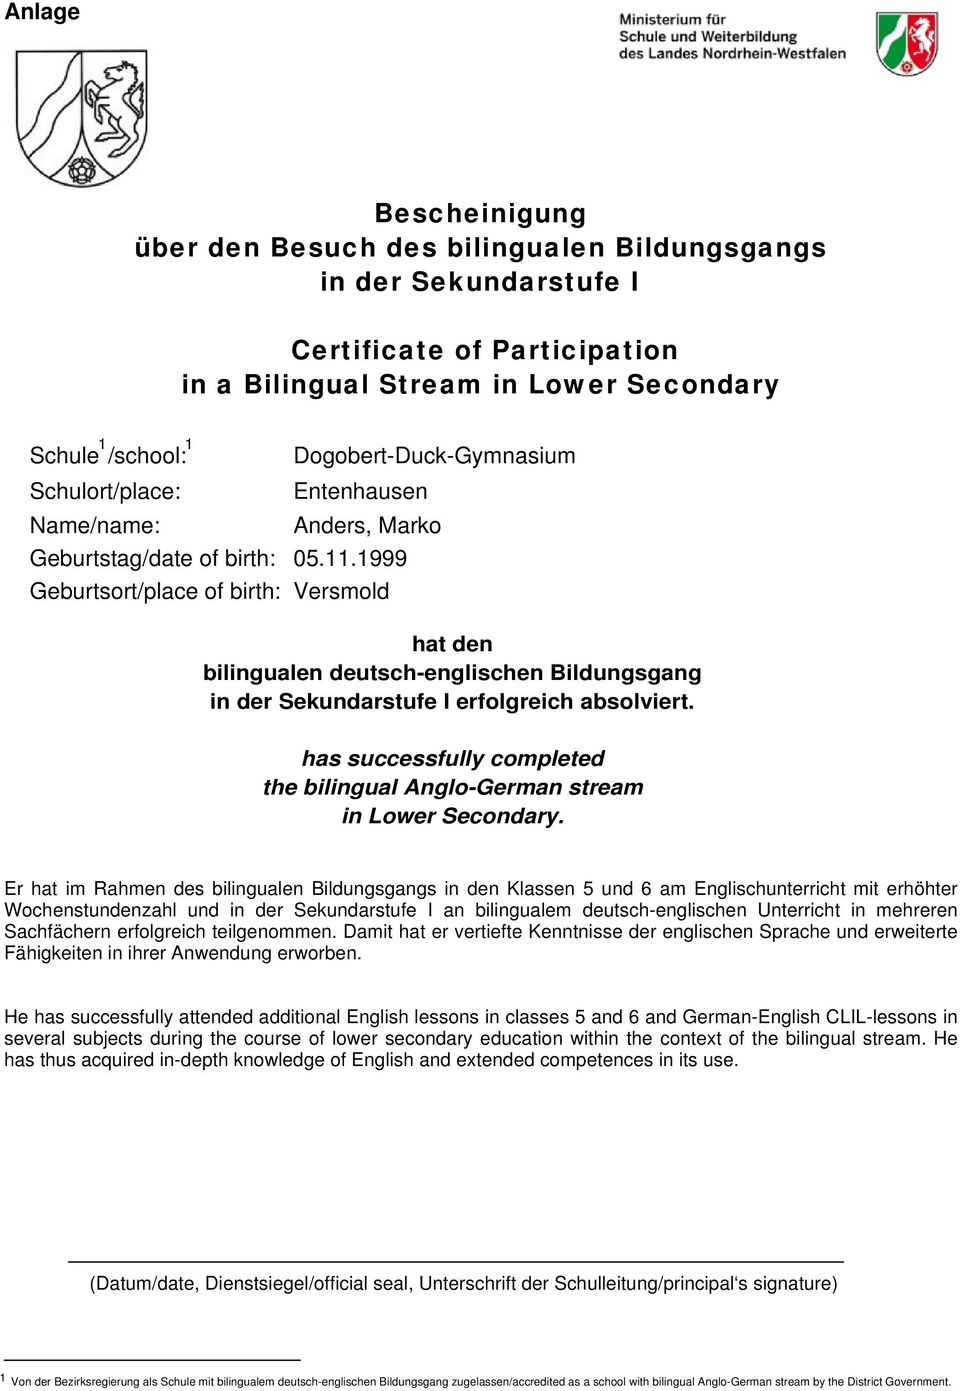 1999 Versmold hat den bilingualen deutsch-englischen Bildungsgang in der Sekundarstufe I erfolgreich absolviert. has successfully completed the bilingual Anglo-German stream in Lower Secondary.